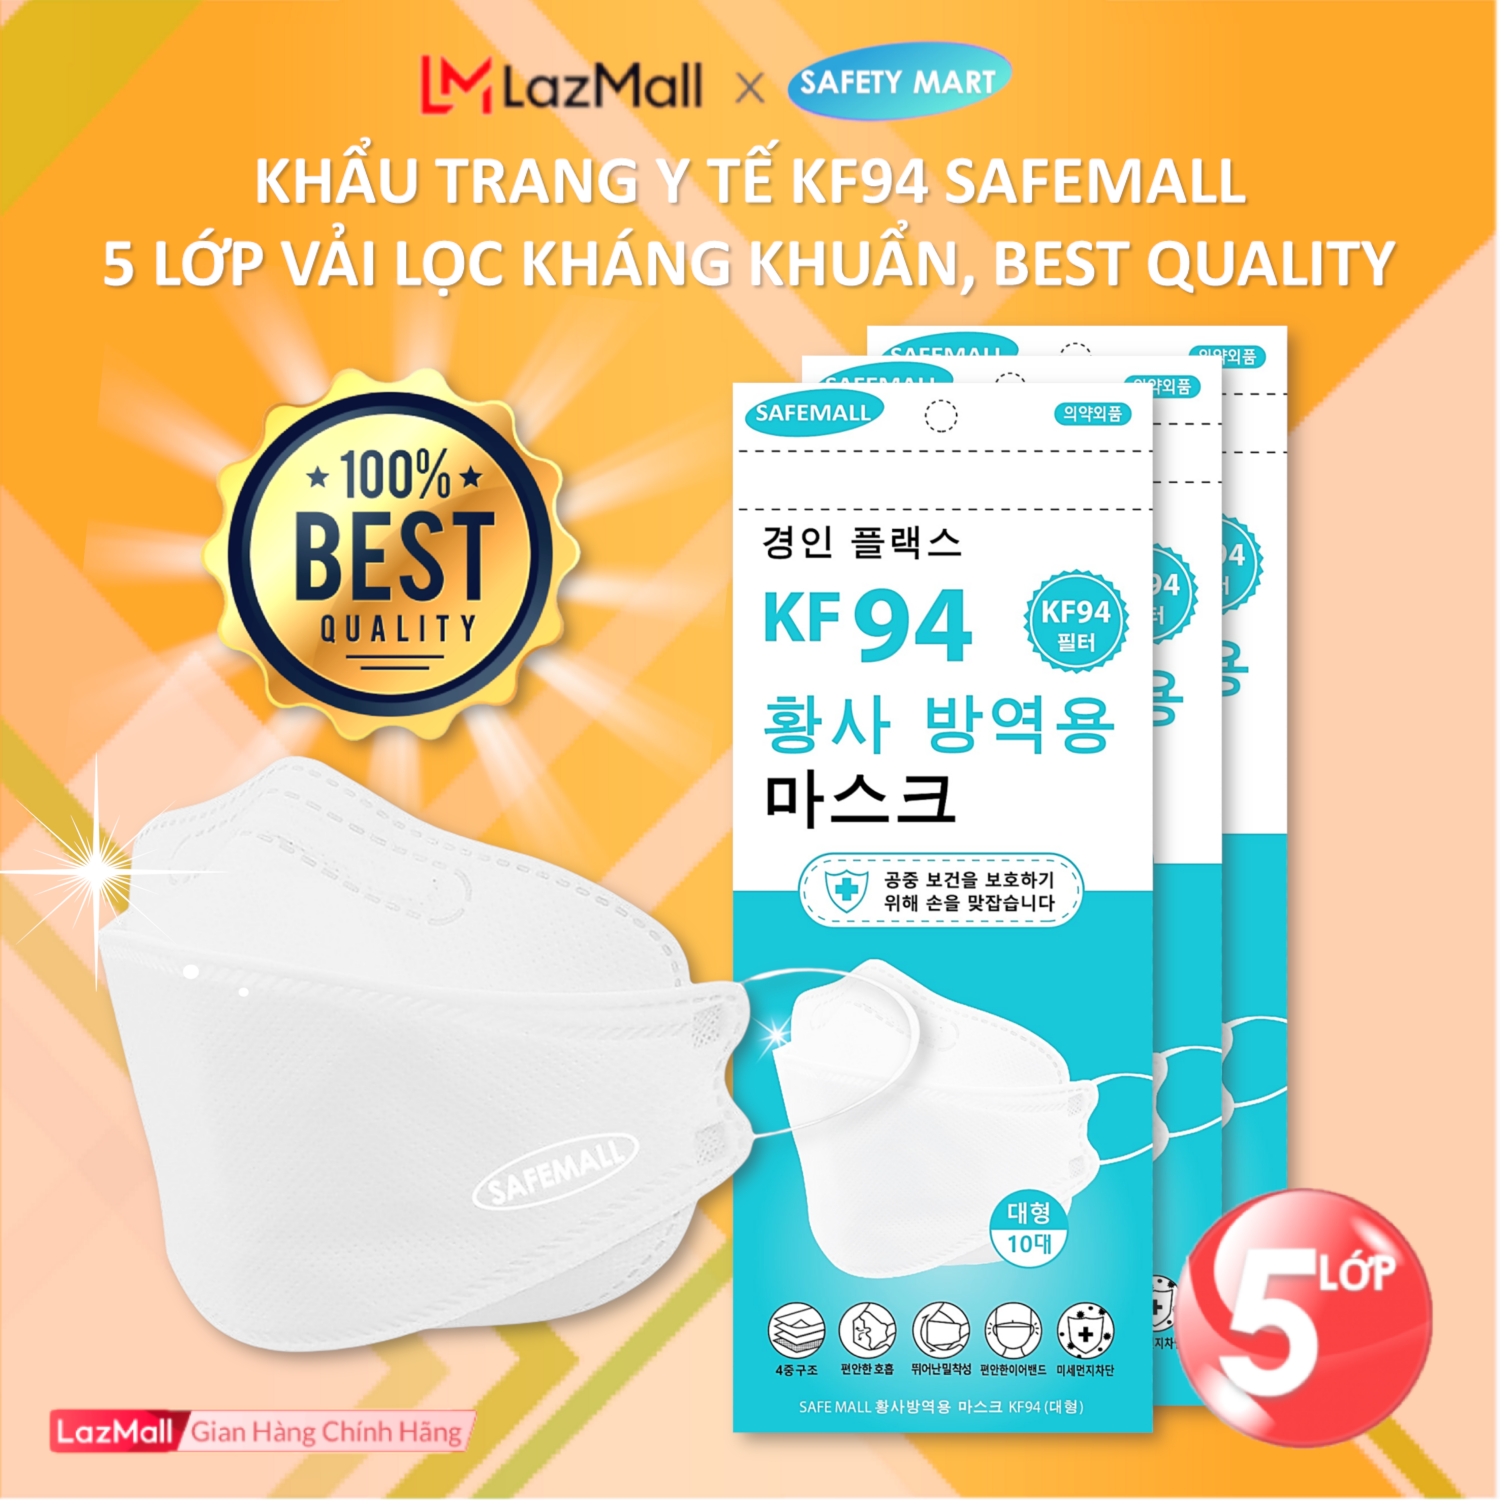 [ĐỘC QUYỀN 5 LỚP] Thùng 300 Khẩu trang y tế 4D KF94 SafeMall Korea Technology, 5 lớp vải kháng khuẩn, kháng bụi mịn lên đến 99%, Khẩu trang dày đẹp loại 1 - Hàng Chính Hãng Safety Mart Official